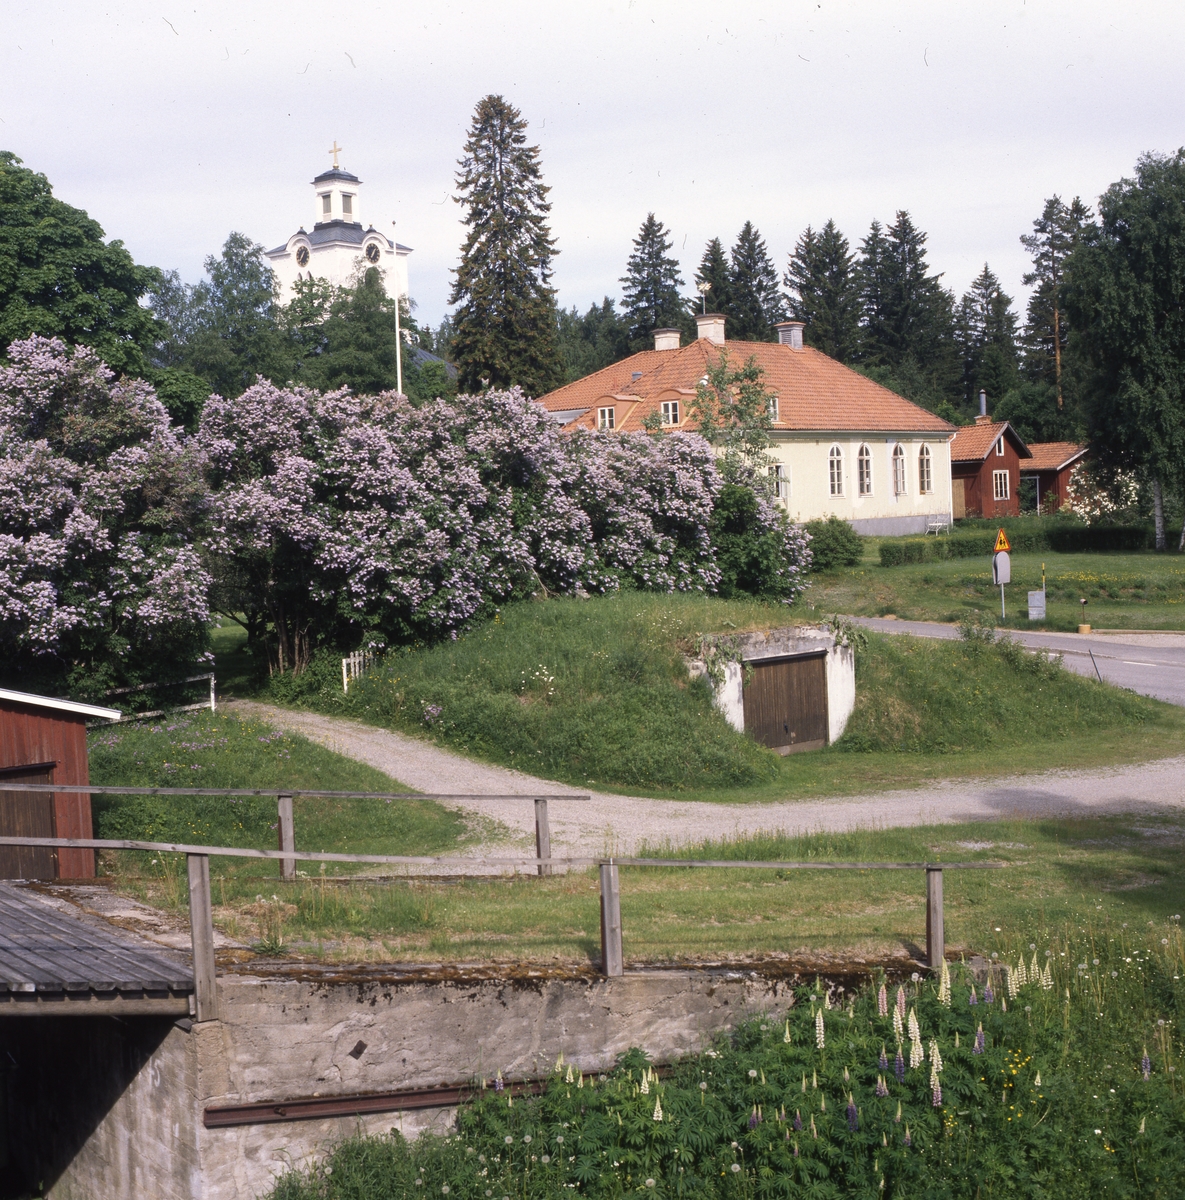 Rengsjö församlingshus med kyrkans torn i bakgrunden, juni 1999.